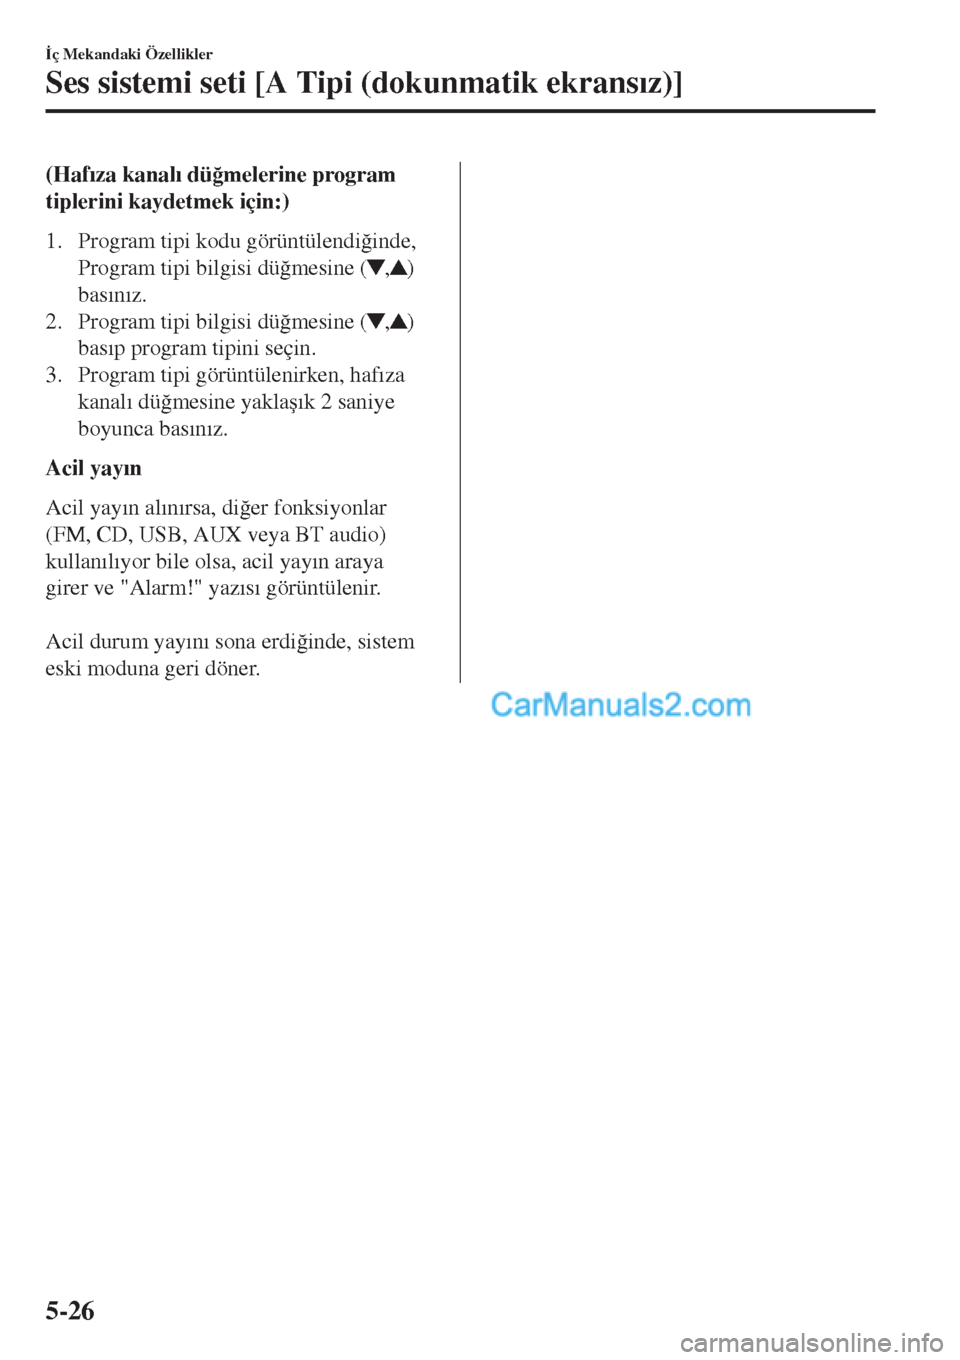 MAZDA MODEL CX-5 2017  Kullanım Kılavuzu (in Turkish) (Haf�Õza kanal�Õ dü�÷melerine program
tiplerini kaydetmek için:)
1. Program tipi kodu görüntülendi�÷inde,
Program tipi bilgisi dü�÷mesine (
,)
bas�Õn�Õz.
2. Program tipi bilgisi dü�÷mes